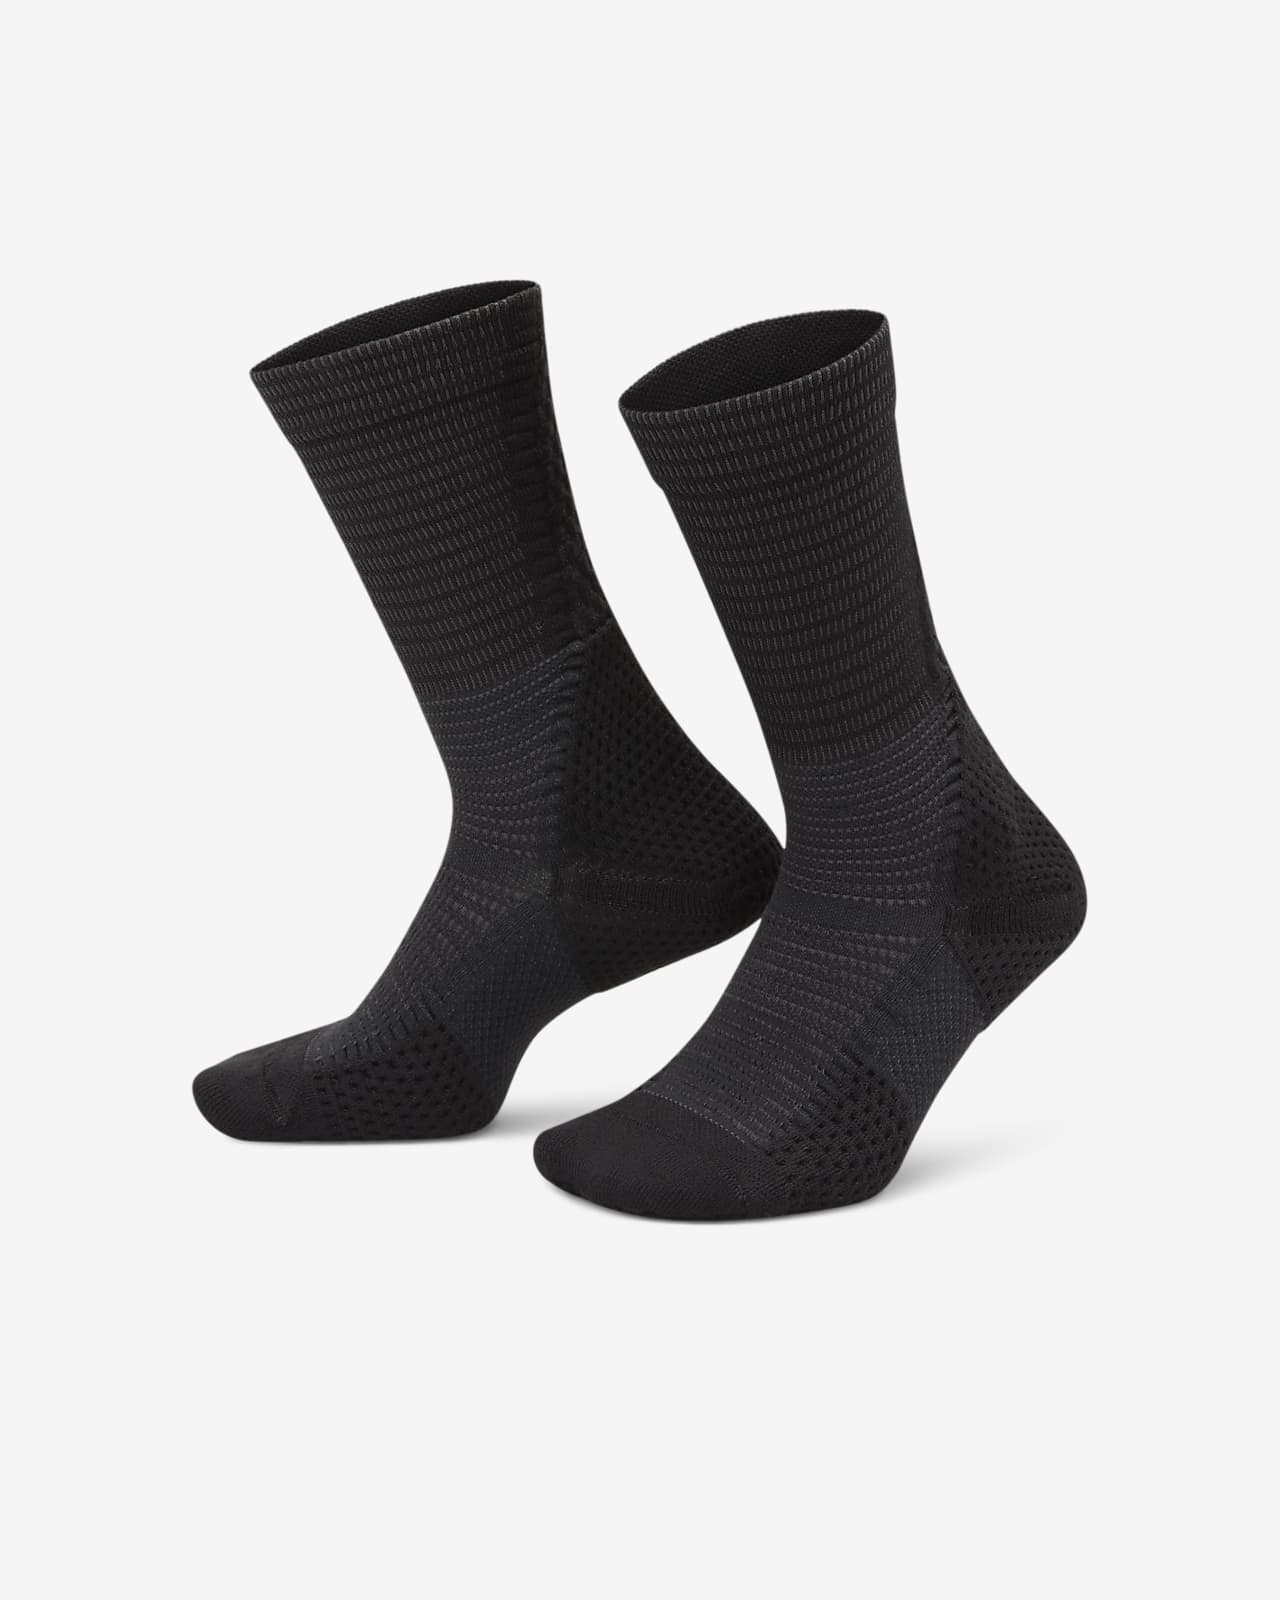 Středně vysoké polstrované ponožky Nike Unicorn Dri-FIT ADV (1 pár)